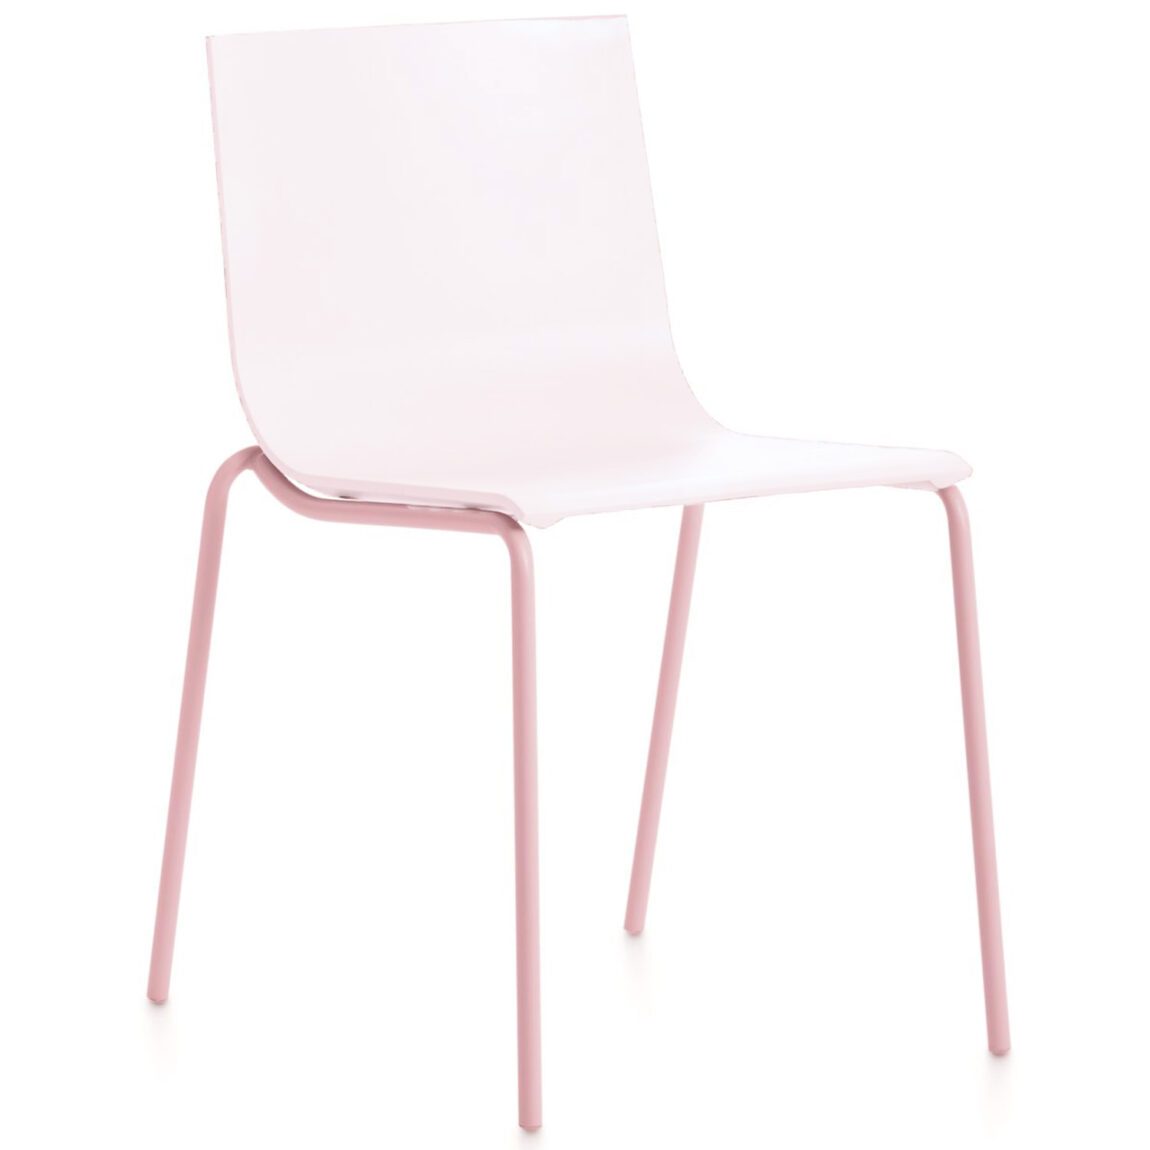 Výprodej Diabla designové židle Vent Chair